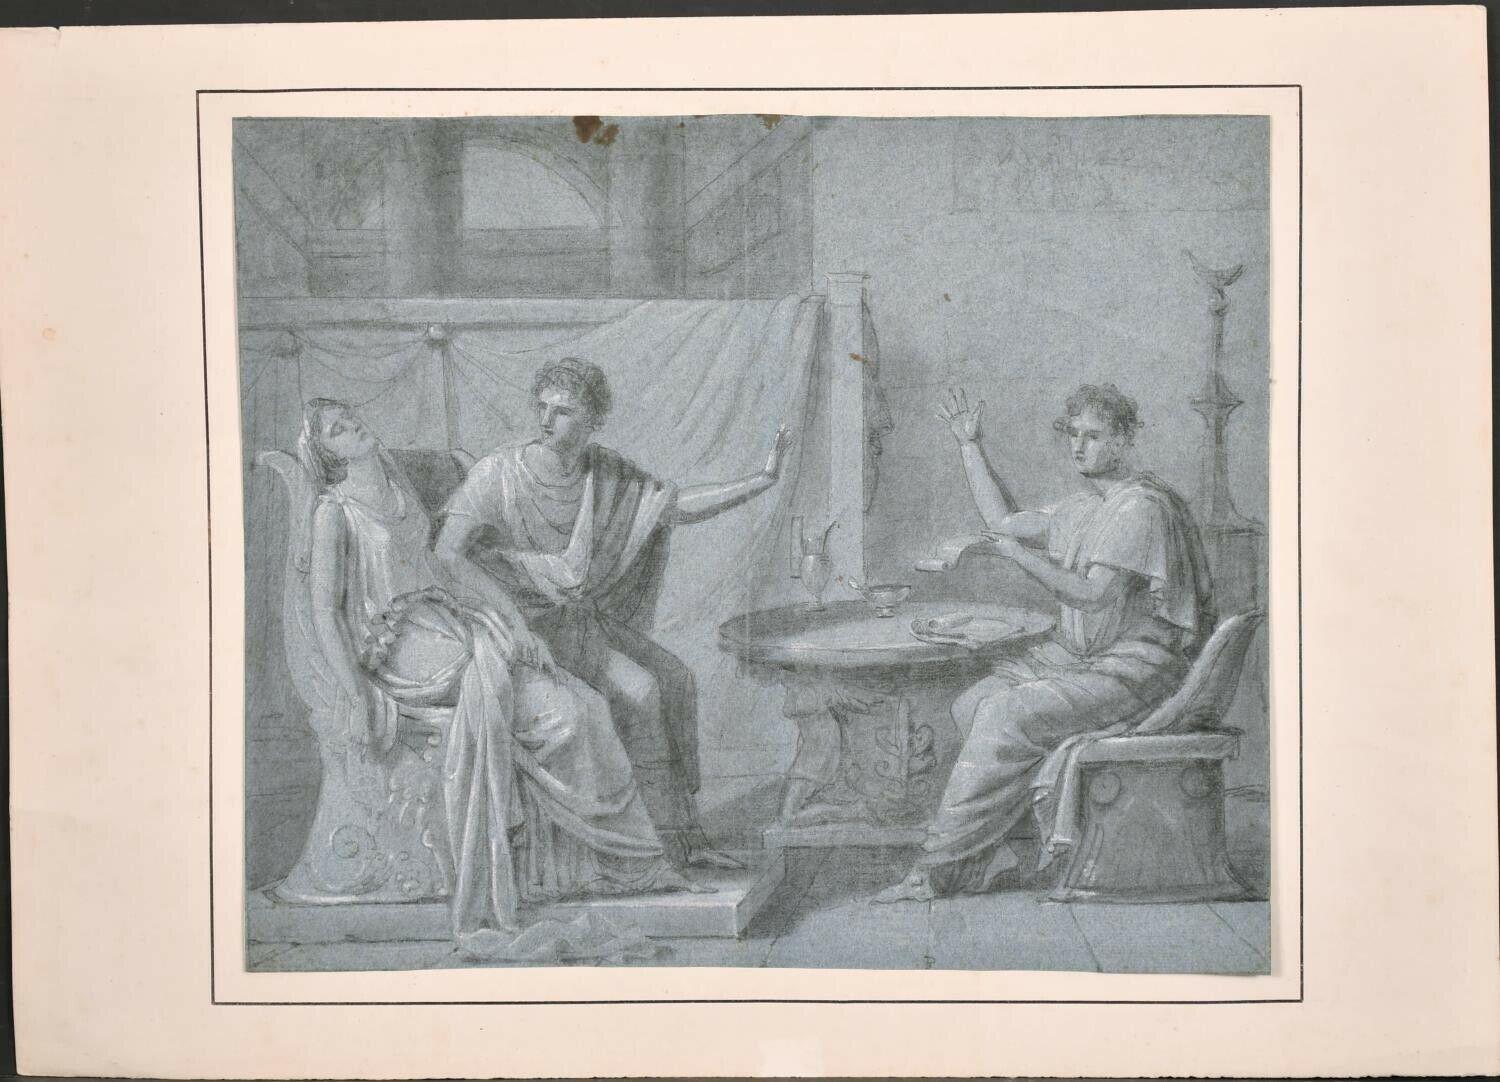 FINE 18. Jahrhundert OLD MASTER CHALK DRAWING – INNEN SCENE AUS römischen FIguren – Painting von Unknown